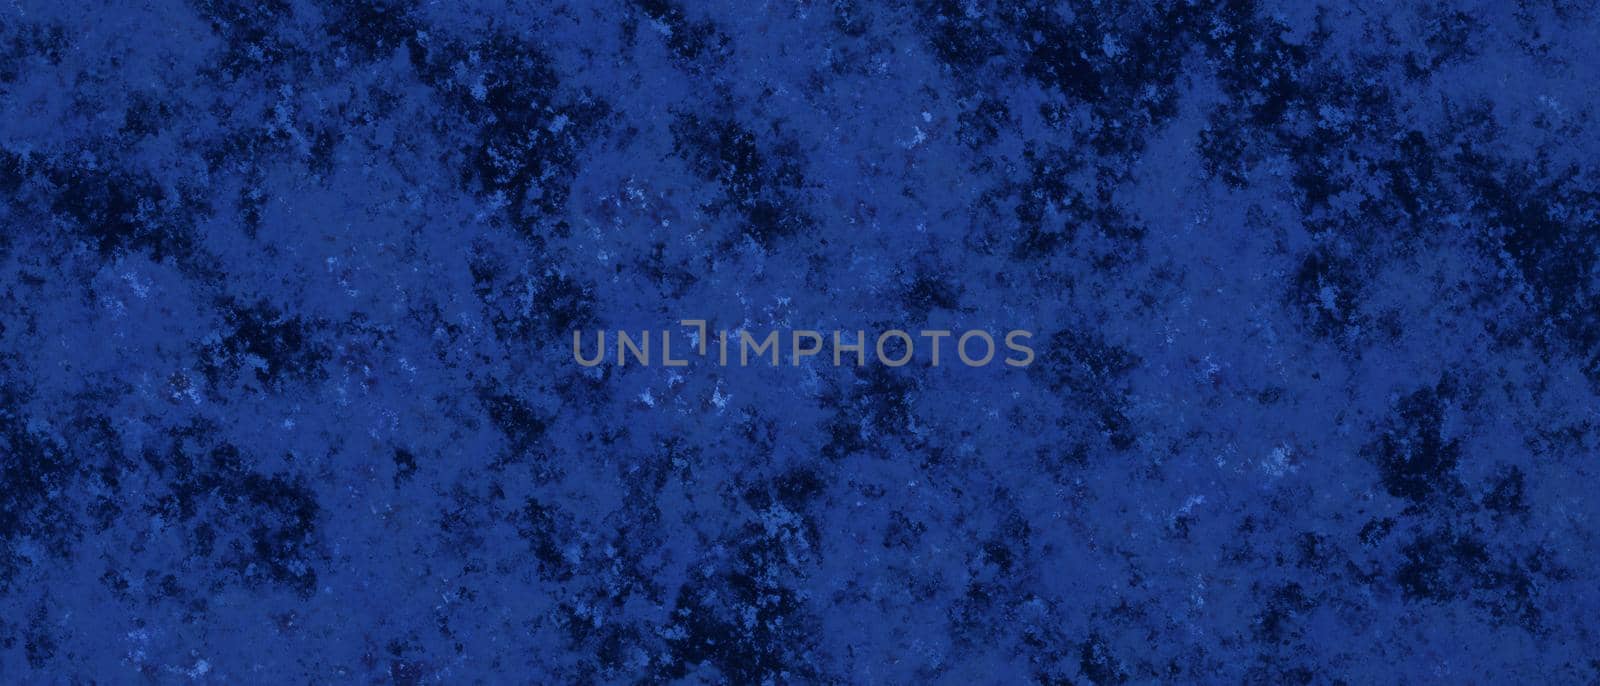 Sapphire dark blue background with marbled grunge texture wallpaper